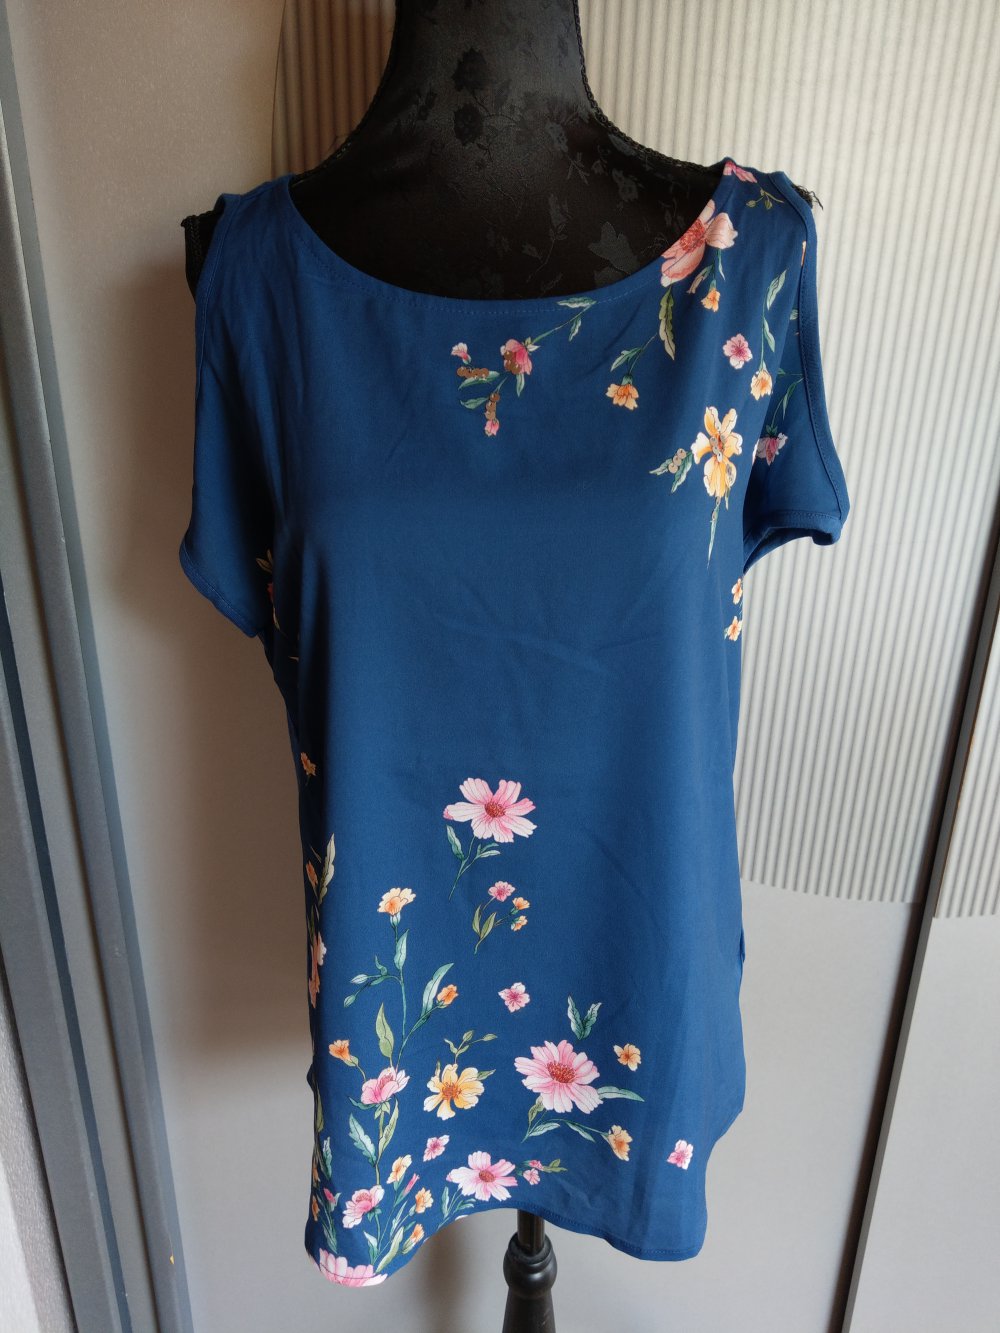 Damen Italy T-Shirt Micky Maus Pailletten blau silber Shirt Gr 36